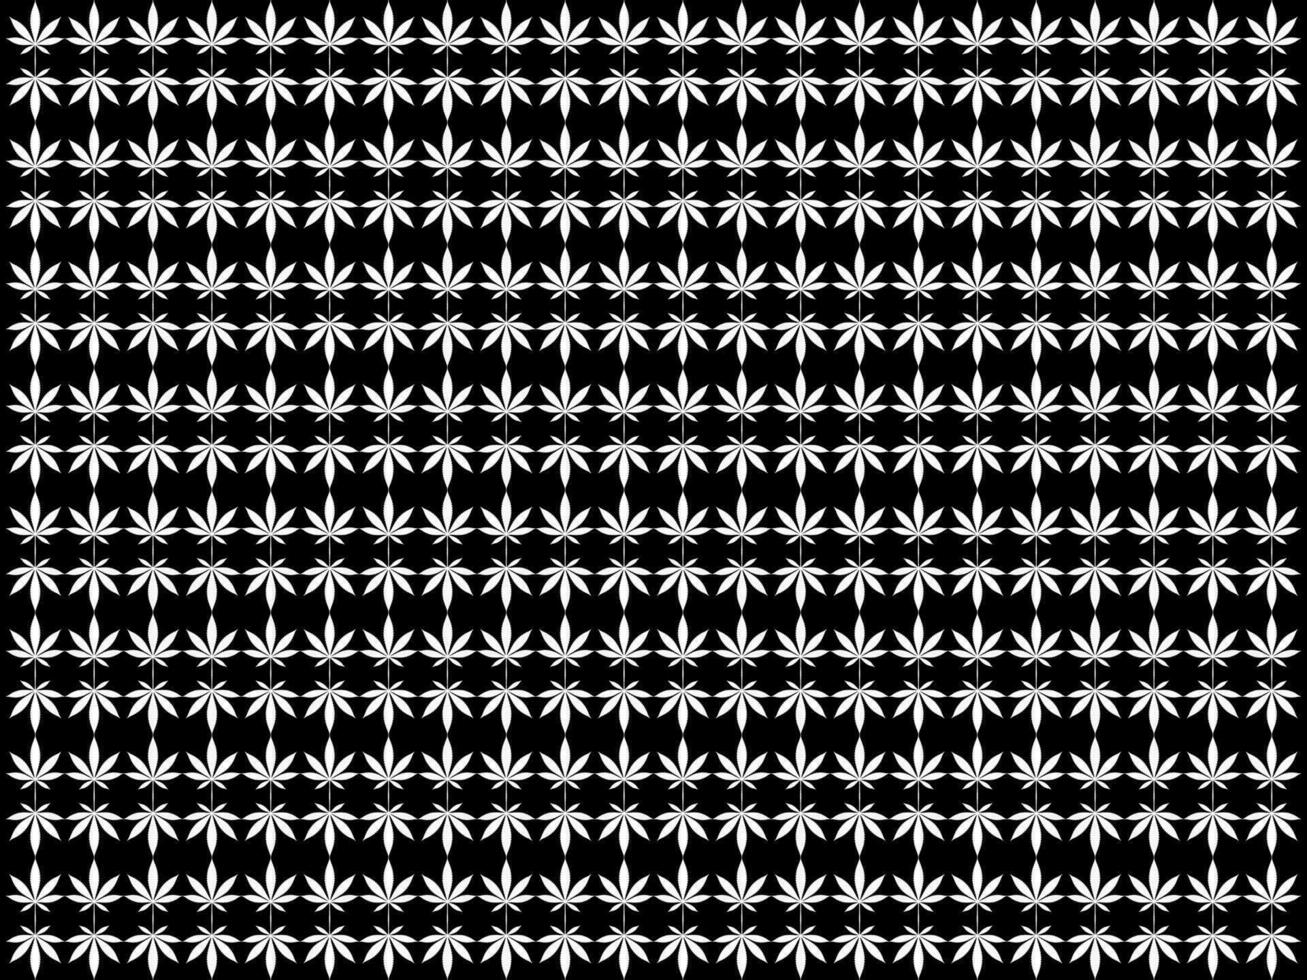 canapa anche conosciuto come marijuana foglia silhouette motivi modello, può uso per decorazione, ornato, sfondo, sfondo, tessile. moda, tessuto, piastrella, pavimento, coperchio, avvolgere, ecc. vettore illustrazione